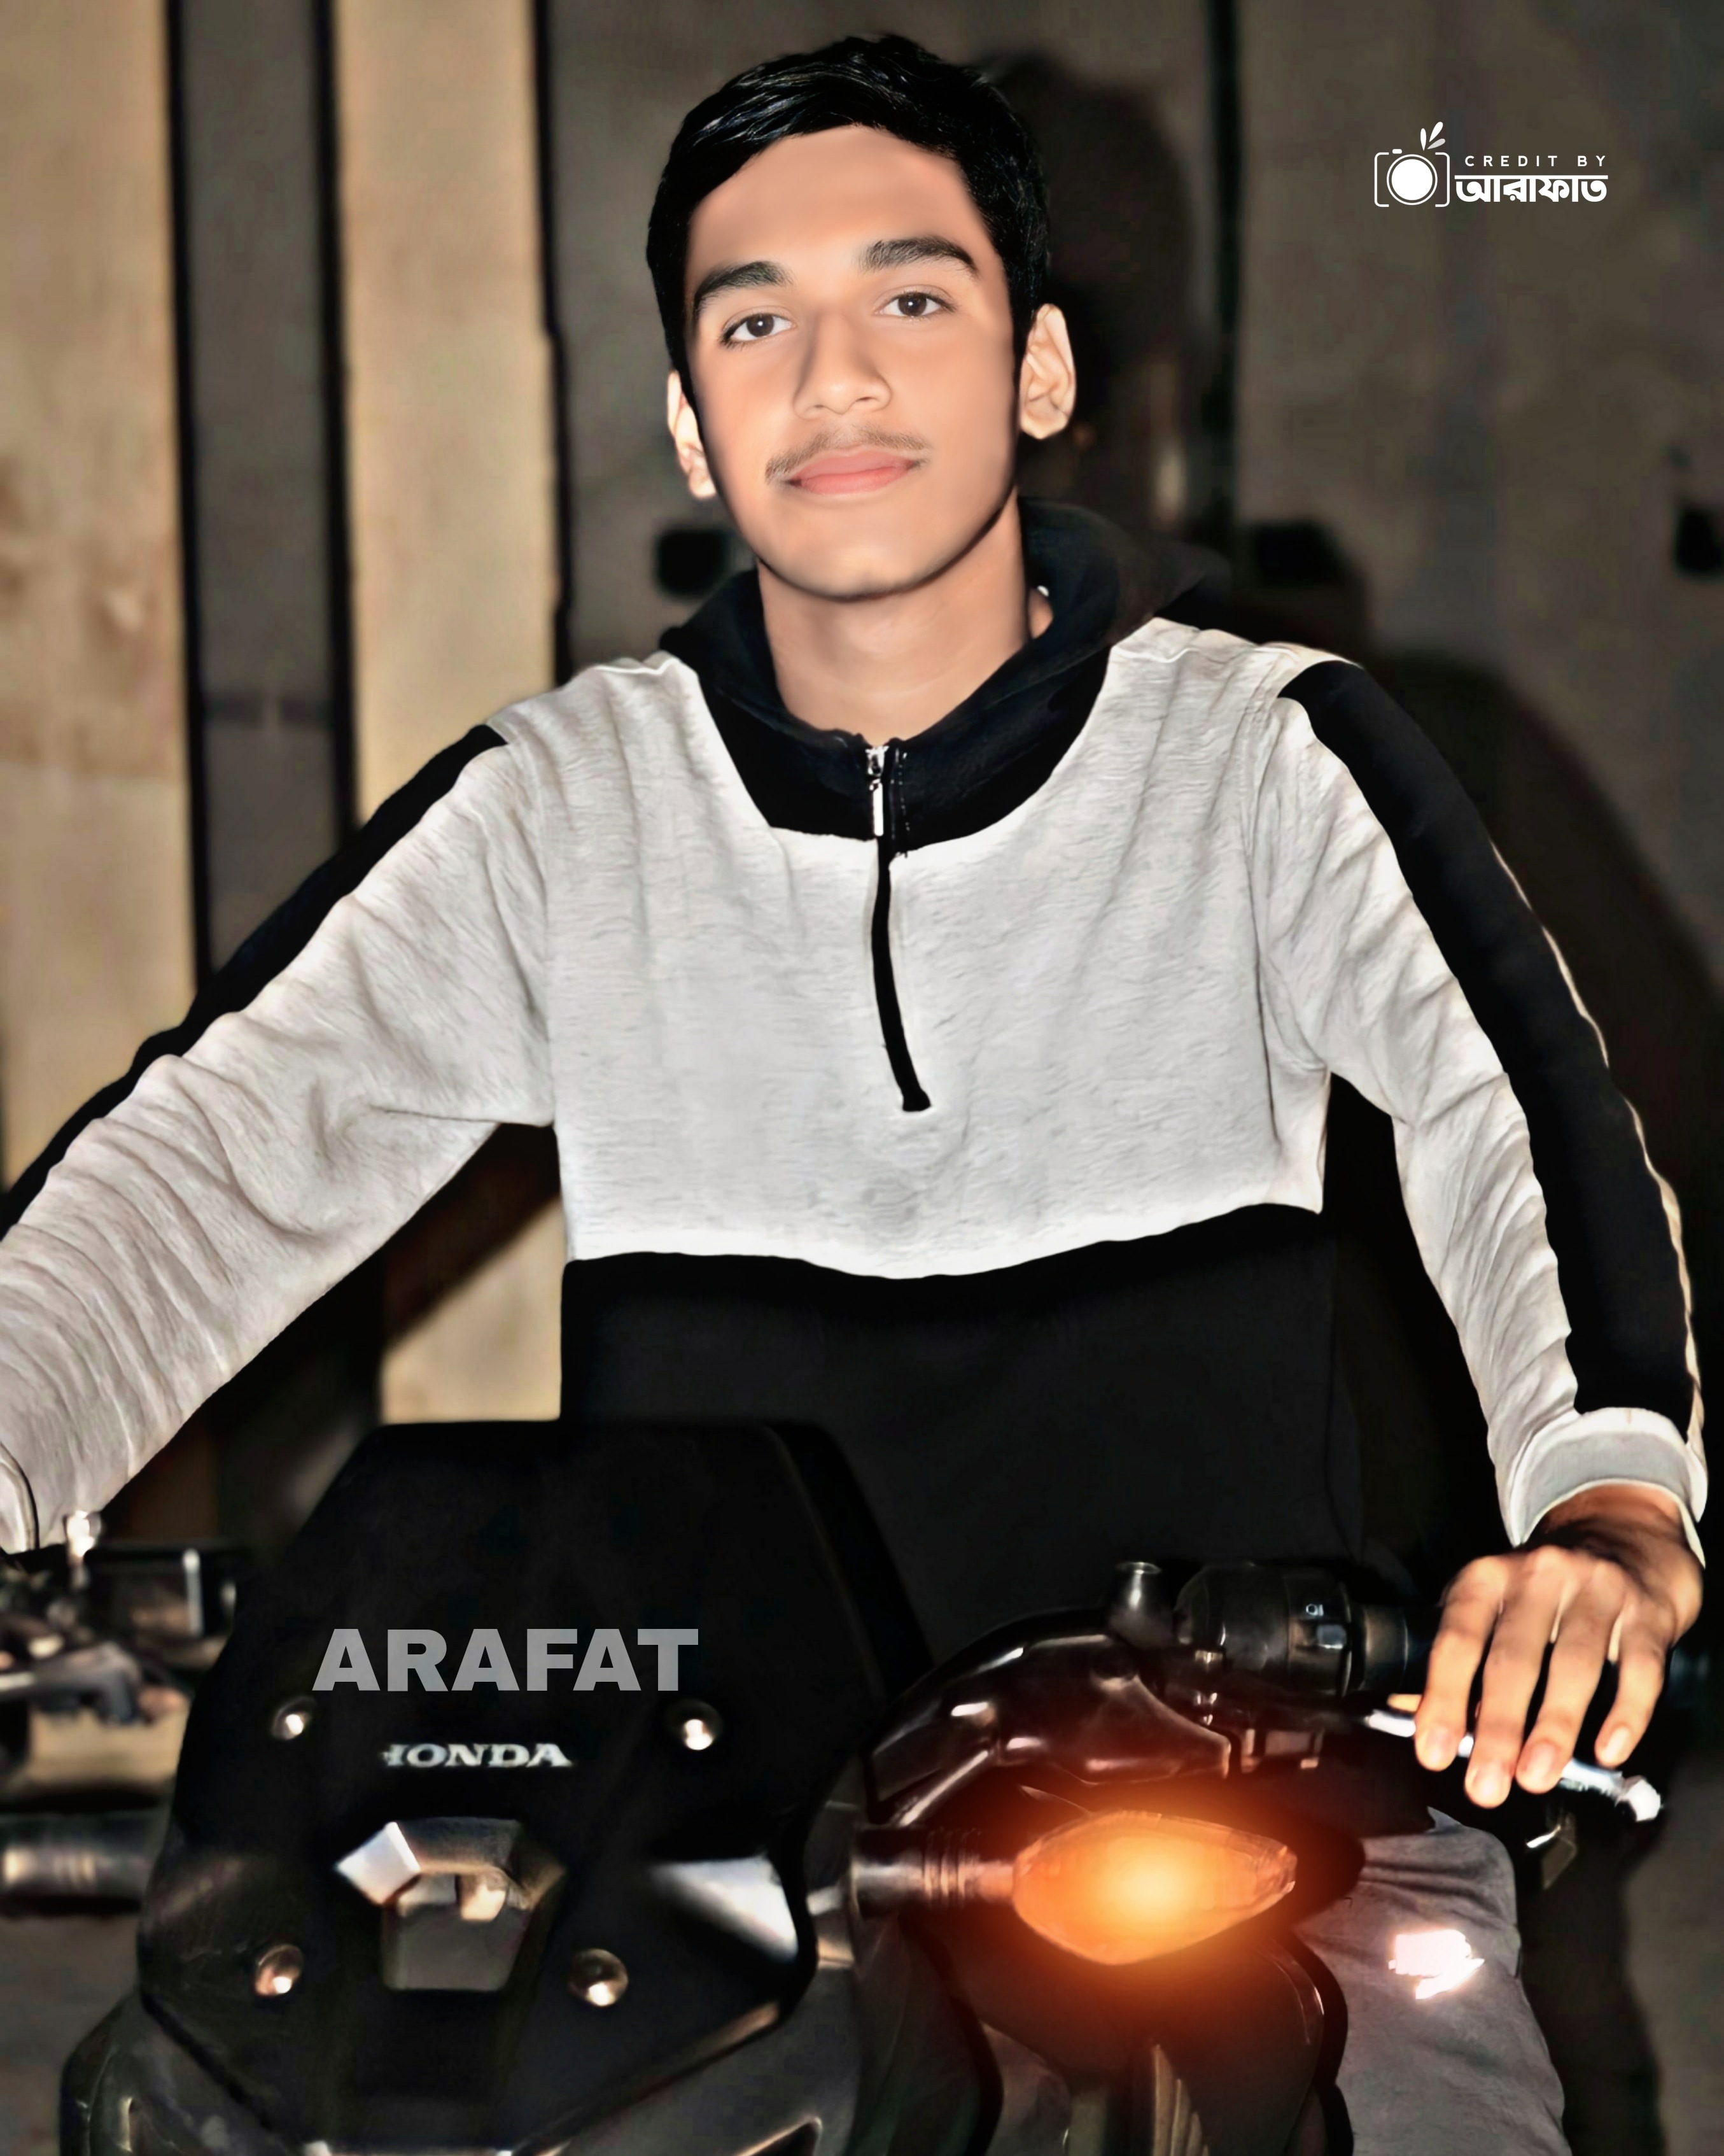 Arafatinbike.jpg